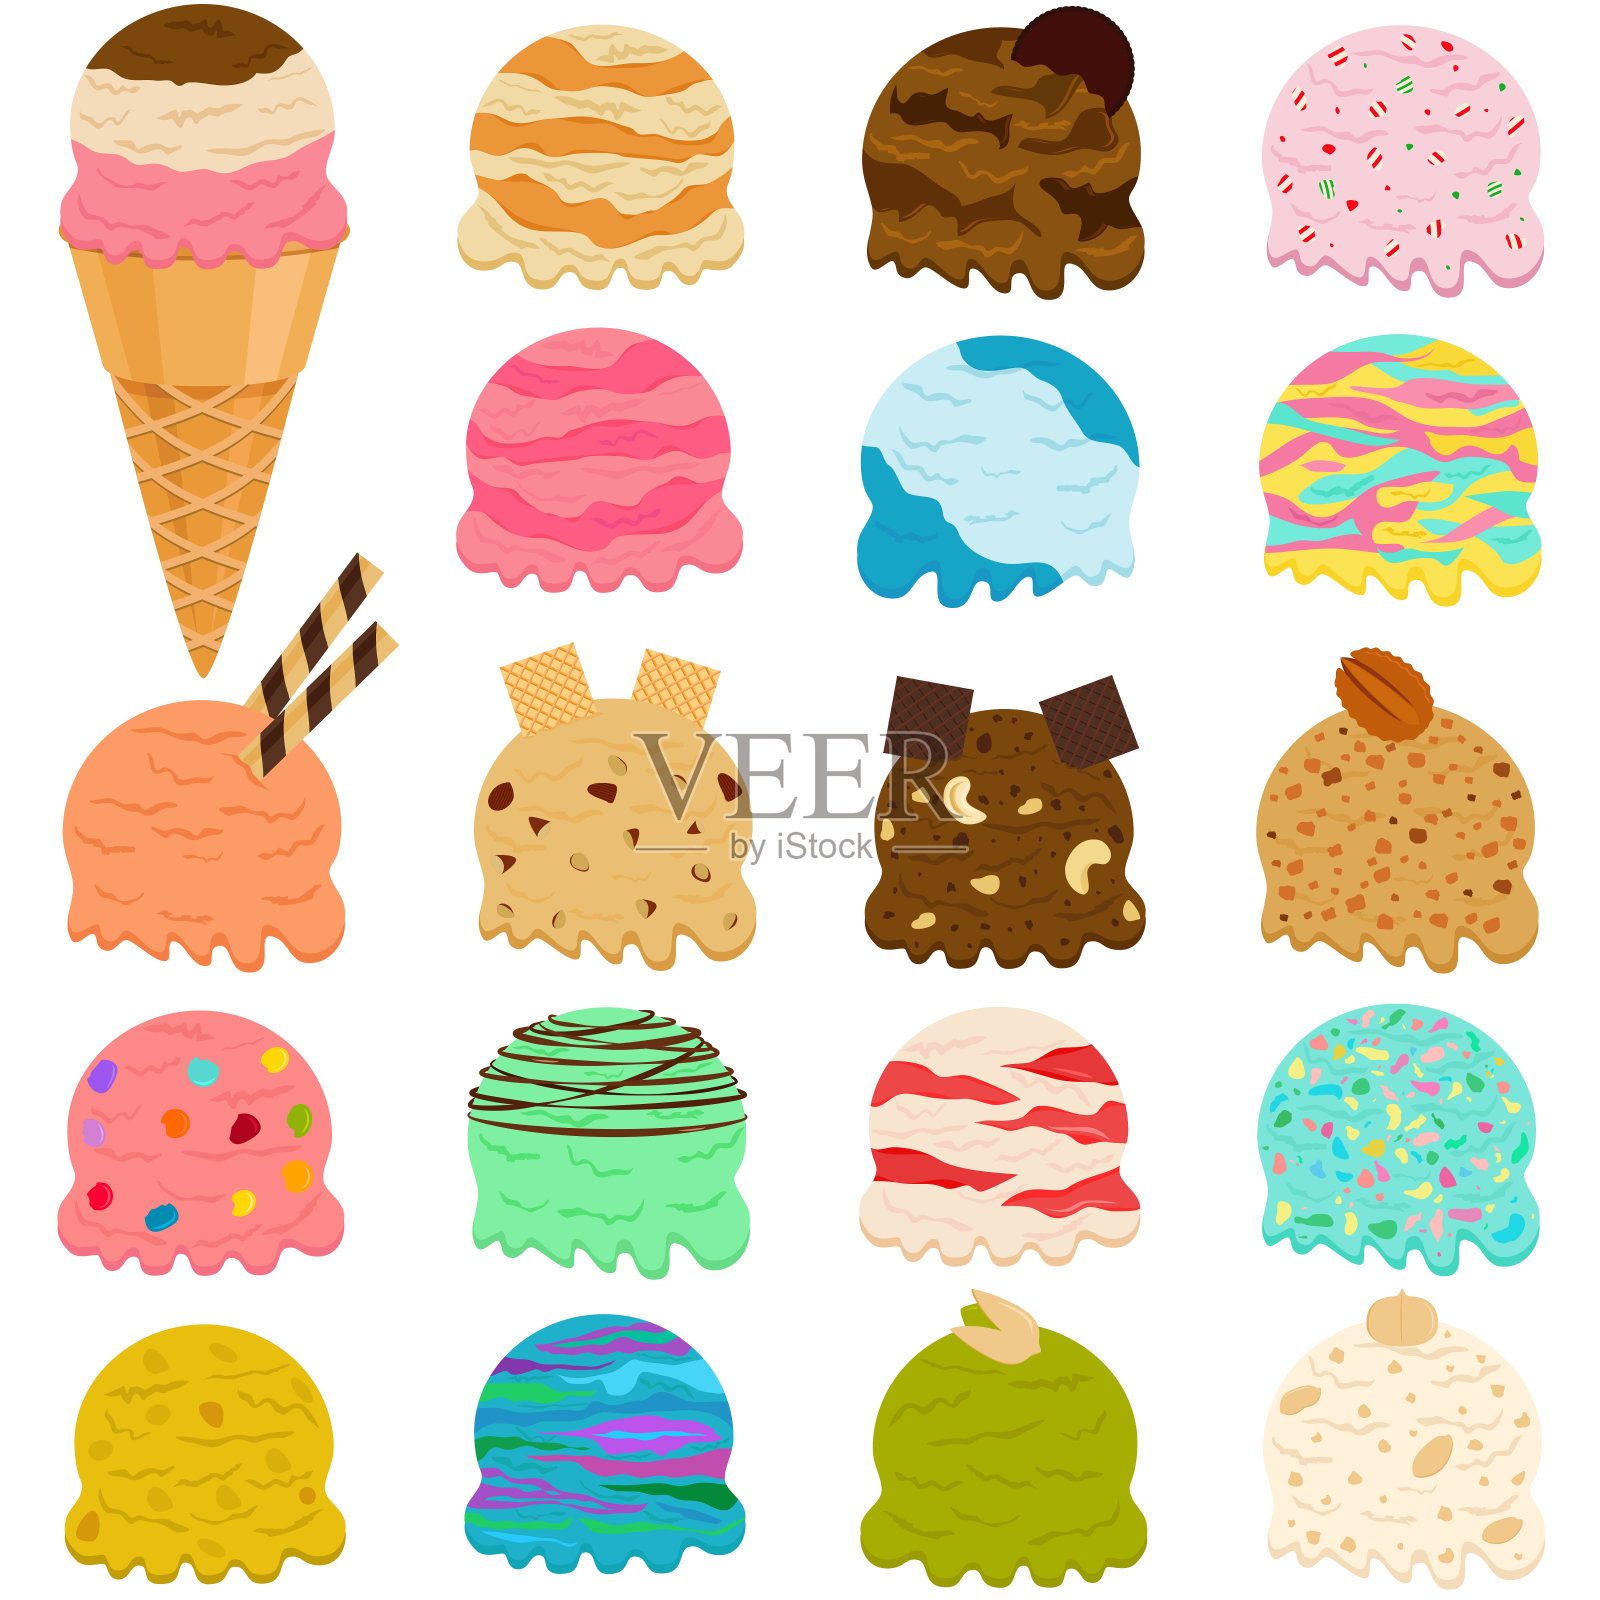 可爱的矢量插图一套冰淇淋球，许多色彩丰富的口味与顶部的威化筒孤立在白色的背景插画图片素材